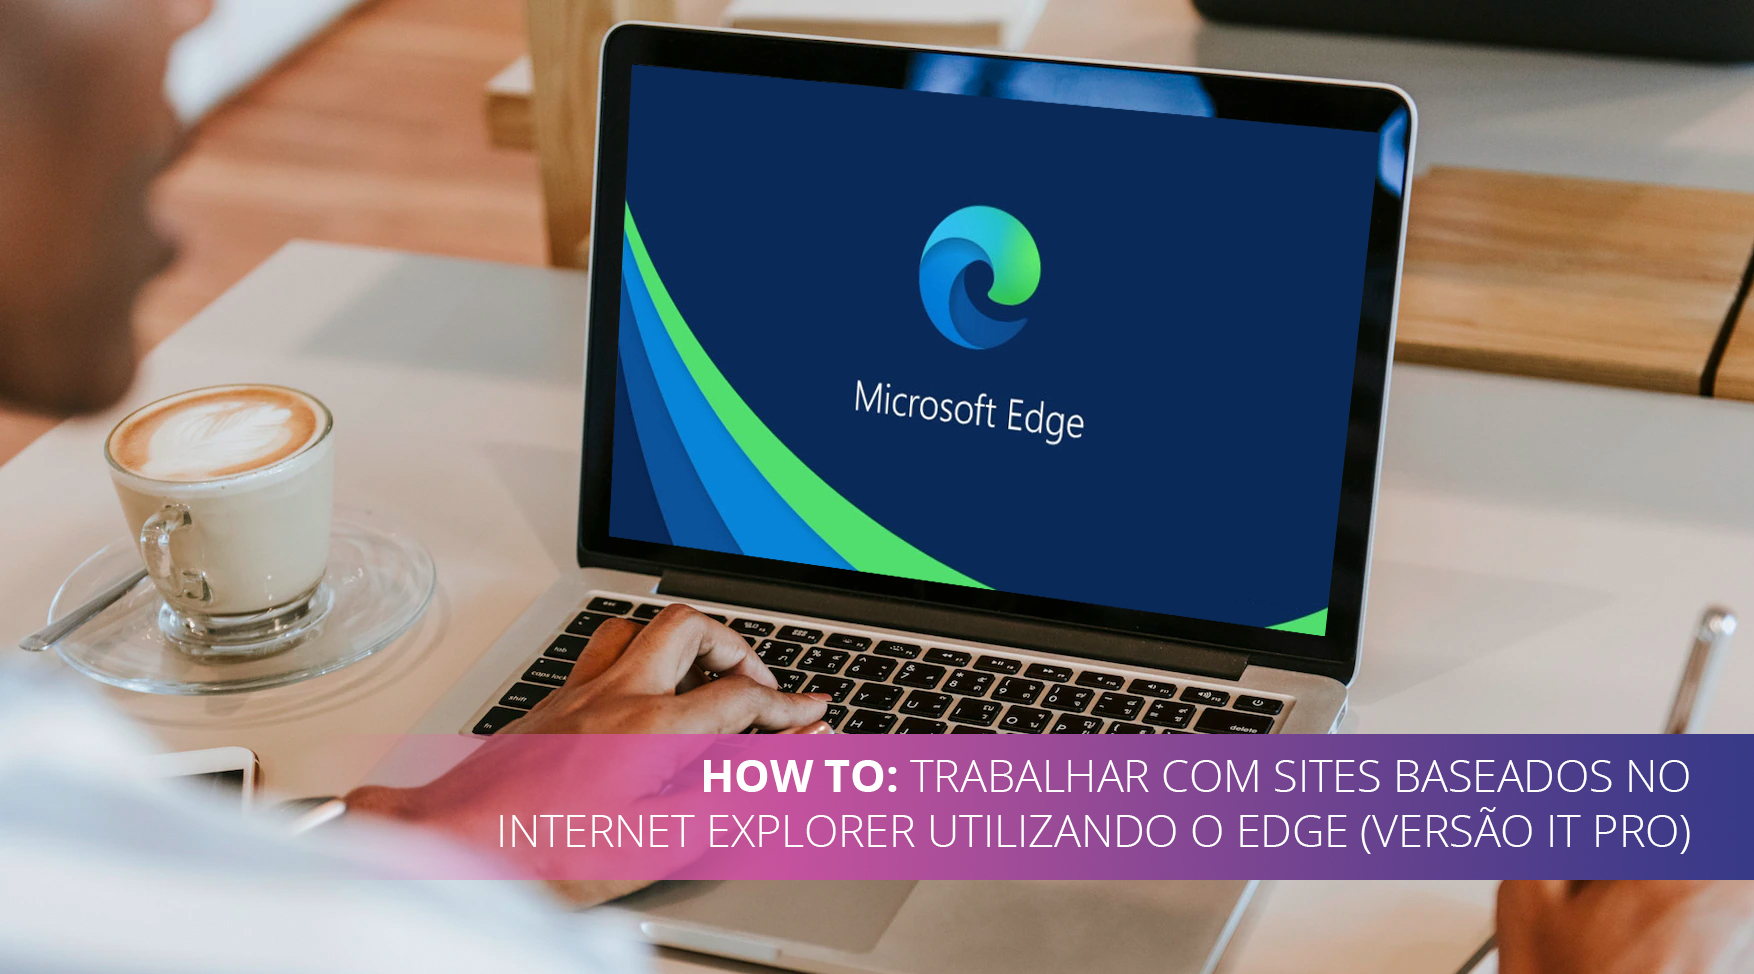 How To: Trabalhar com sites baseados no internet explorer utilizando o Edge (Versão IT Pro).